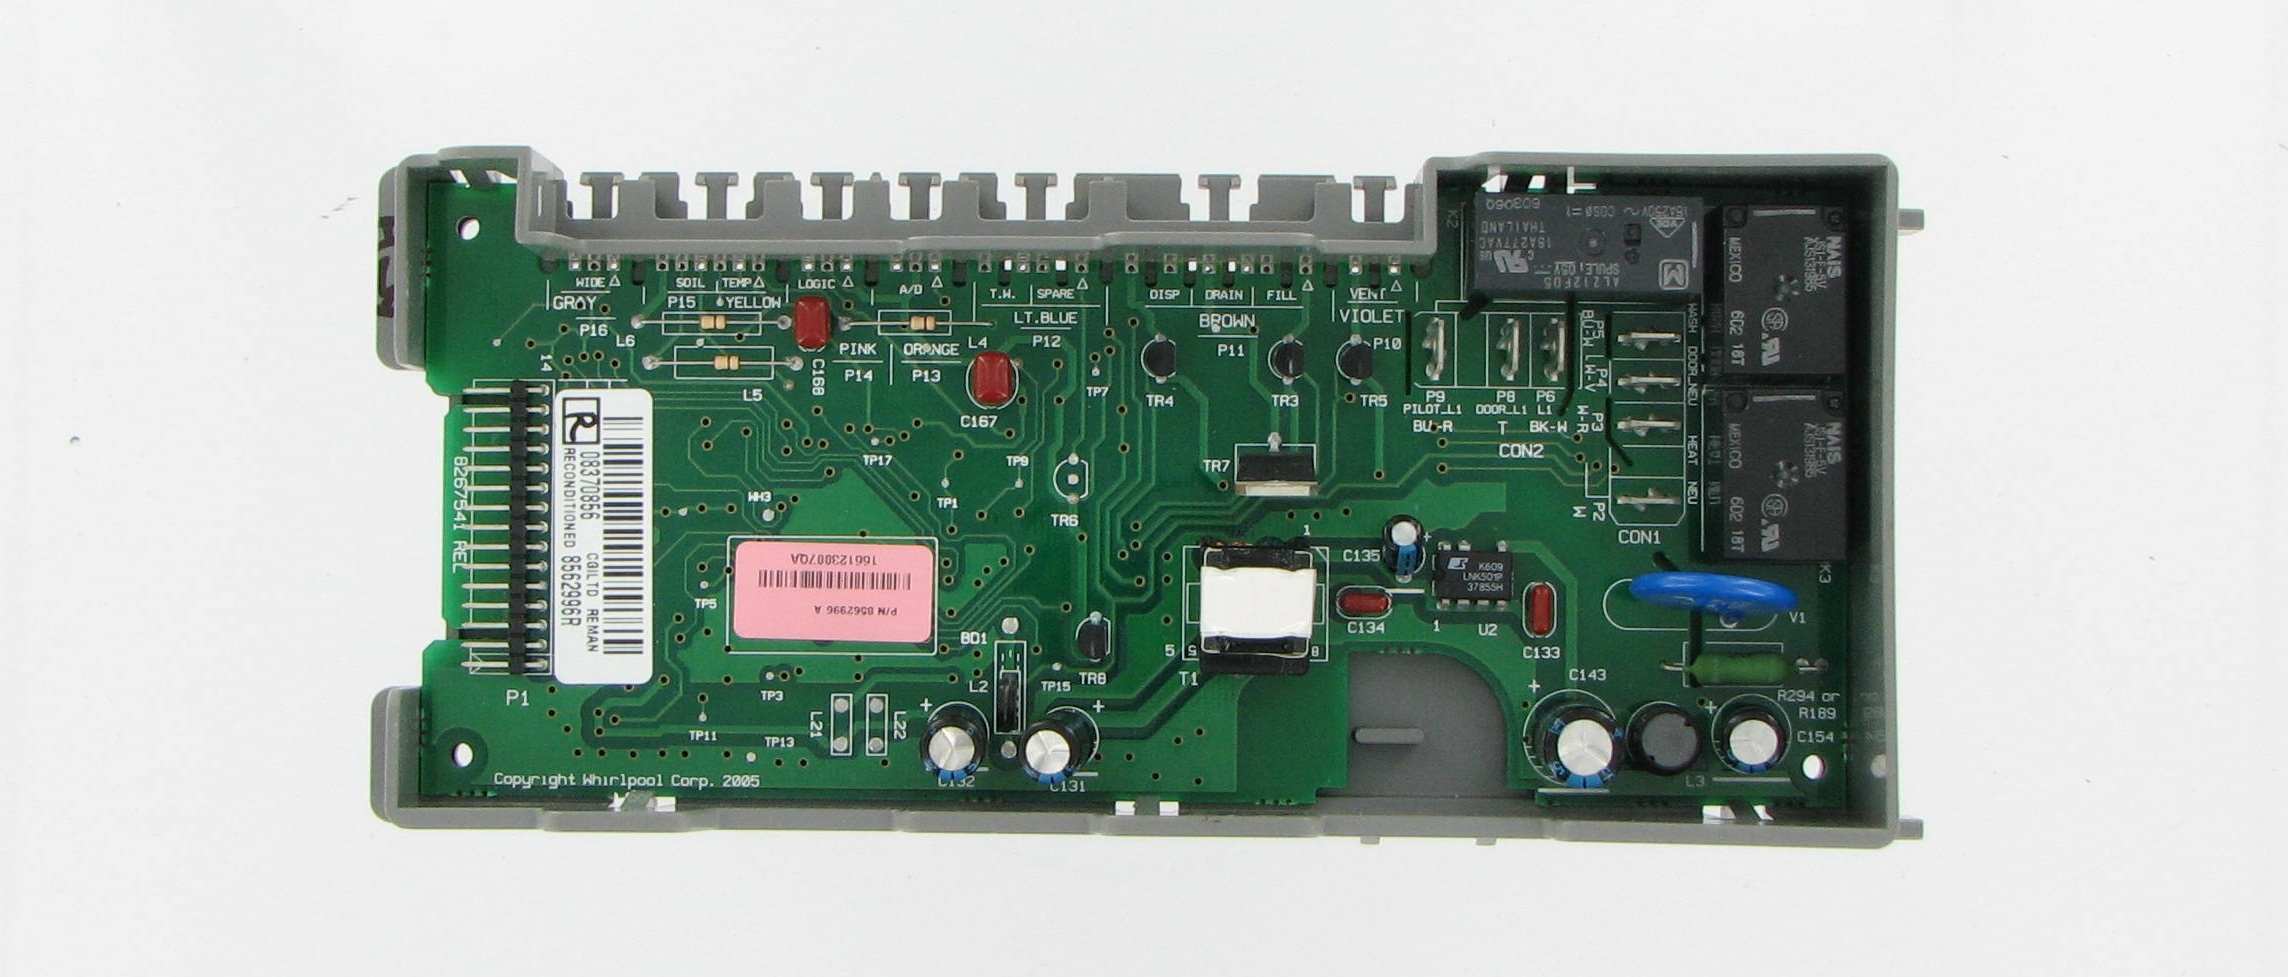 WHIRLPOOL Dishwasher Electronic MAIN Control Board W10130967 W10285180 W10084141 